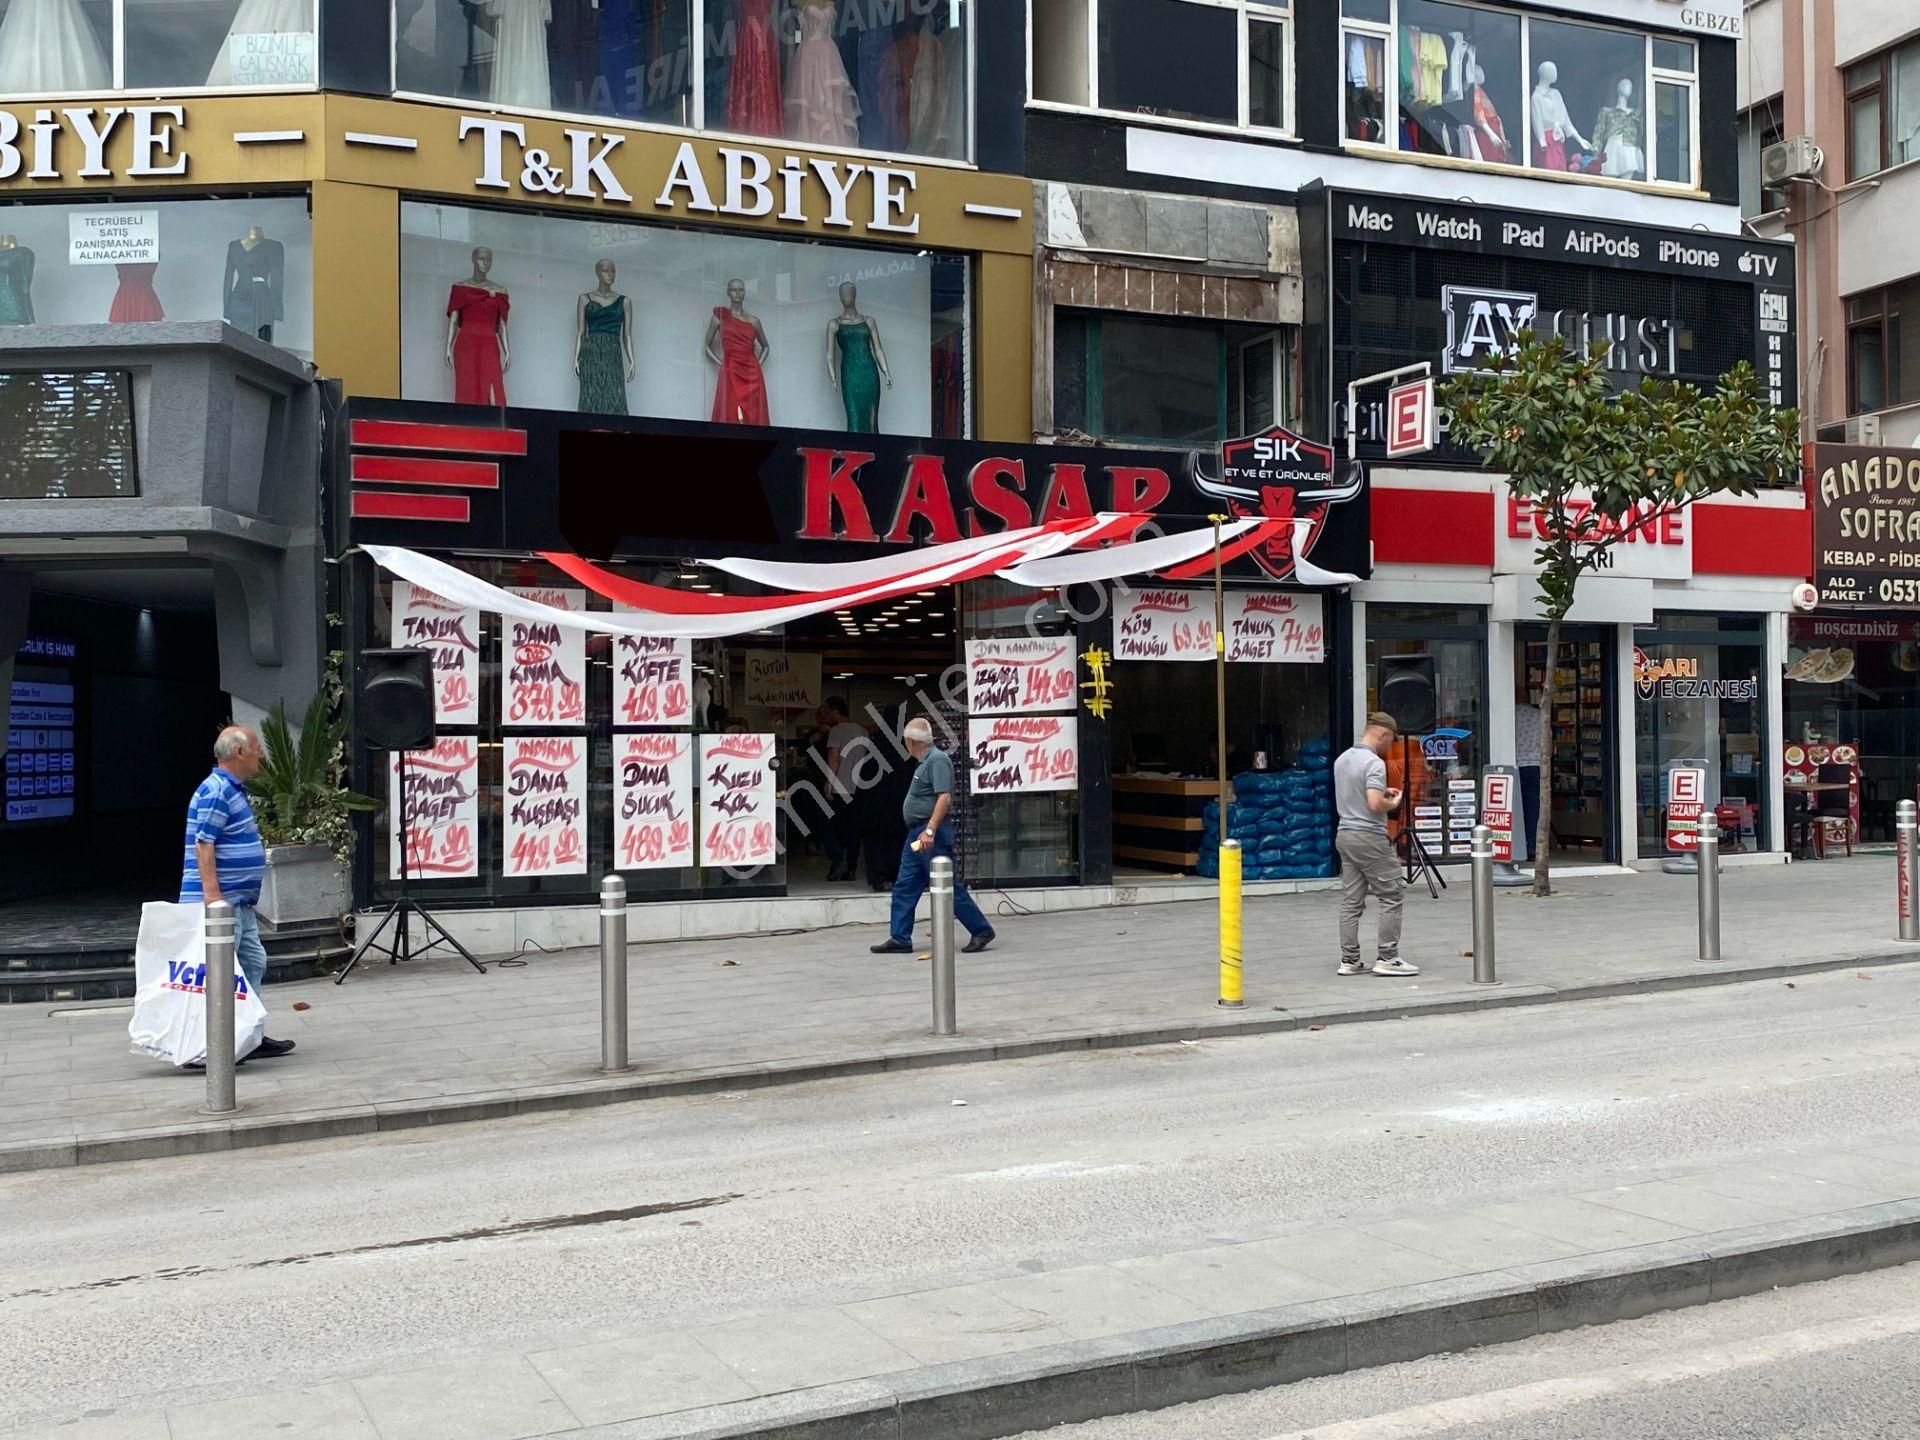 Gebze Hacıhalil Satılık Dükkan & Mağaza  Gebze'nin Tam Merkezinde Satılık Dükkan